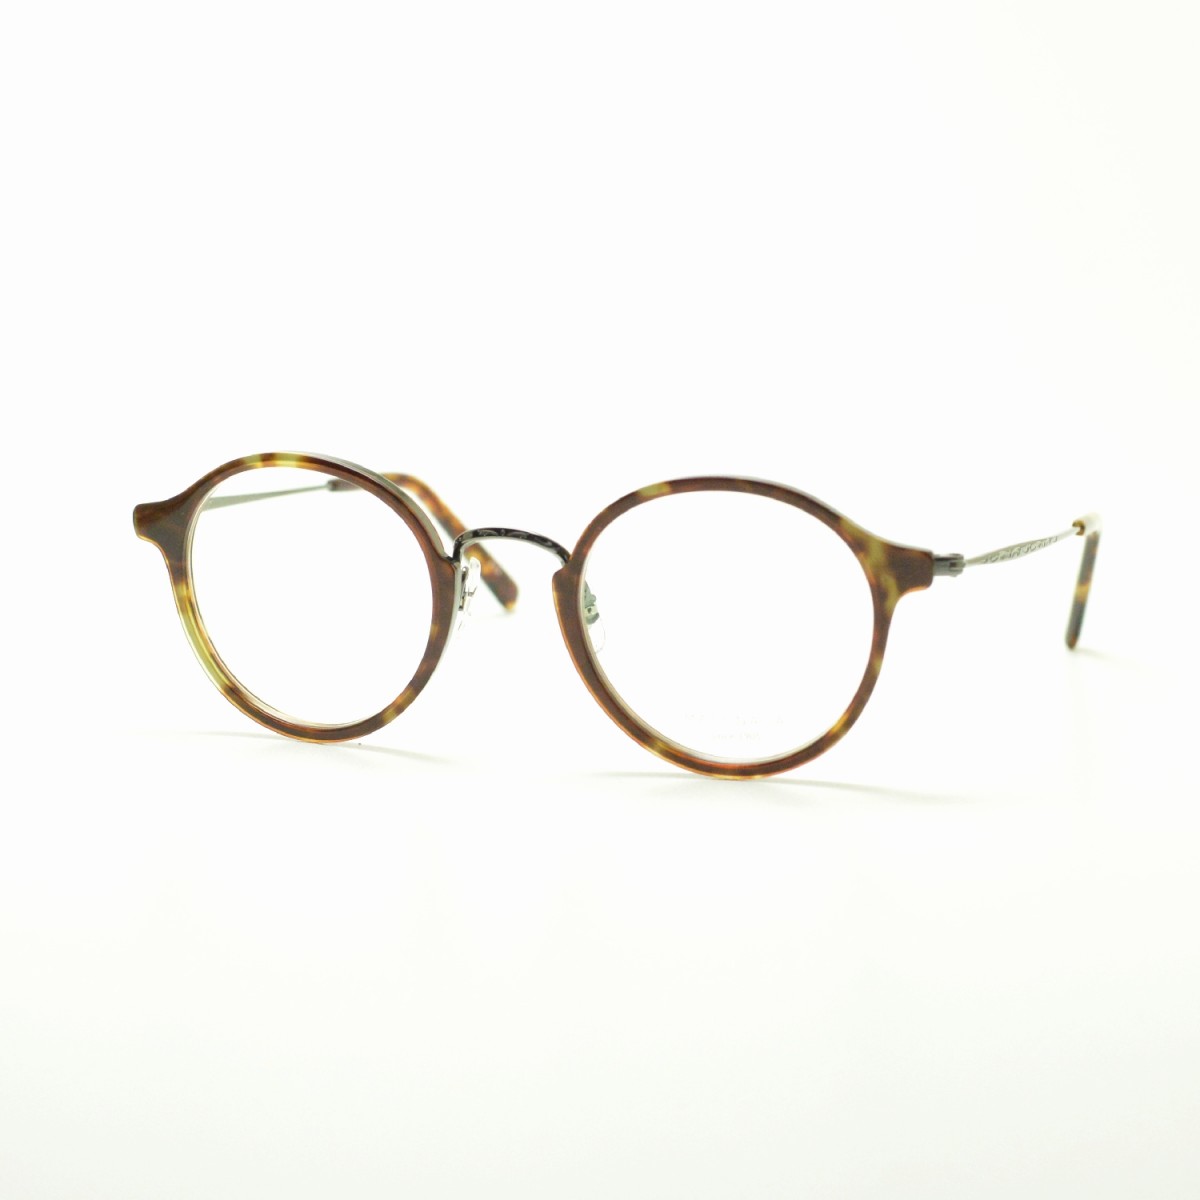 増永眼鏡 MASUNAGA GMS-826 col-34 DEMI/GRY メガネ 眼鏡 めがね 